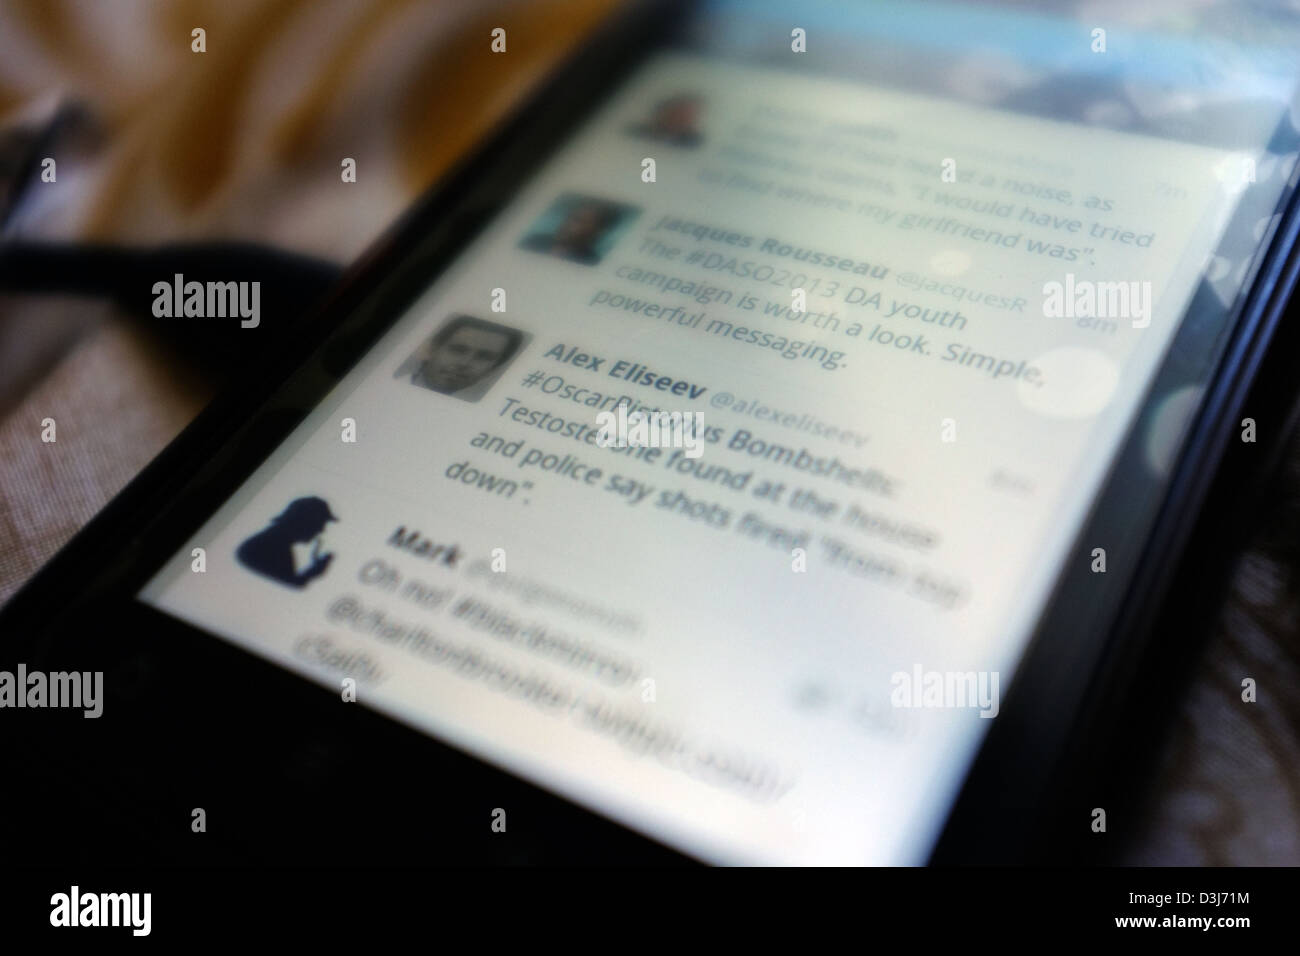 Un téléphone intelligent écran montrant le twitter de rapports concernant l'Oscar Pistorius et son procès pour meurtre en Afrique du Sud en 2013. Banque D'Images